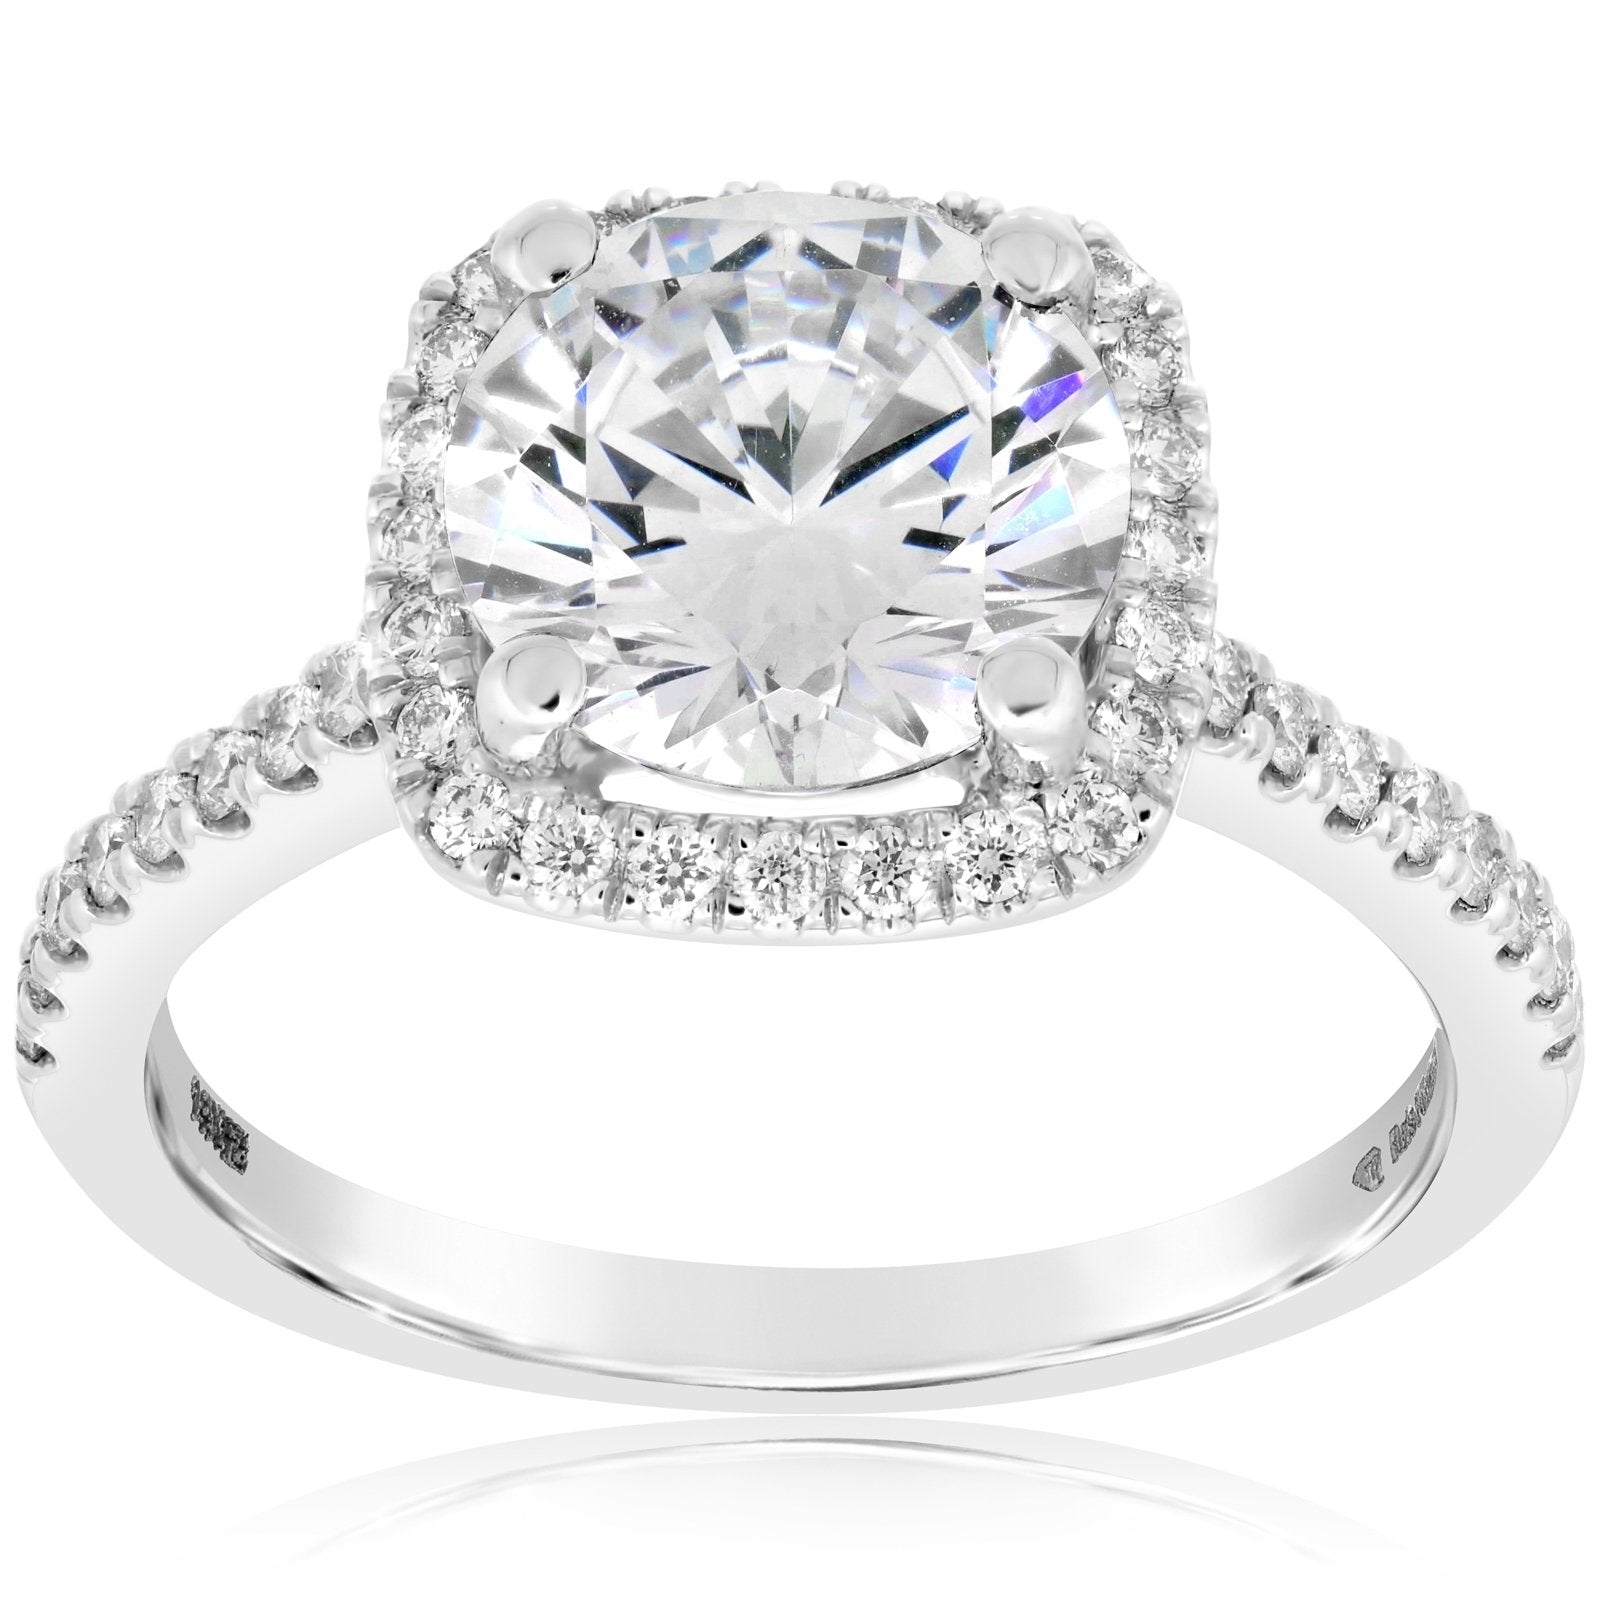 Buy Shimmering Square Diamond Ring Online | ORRA